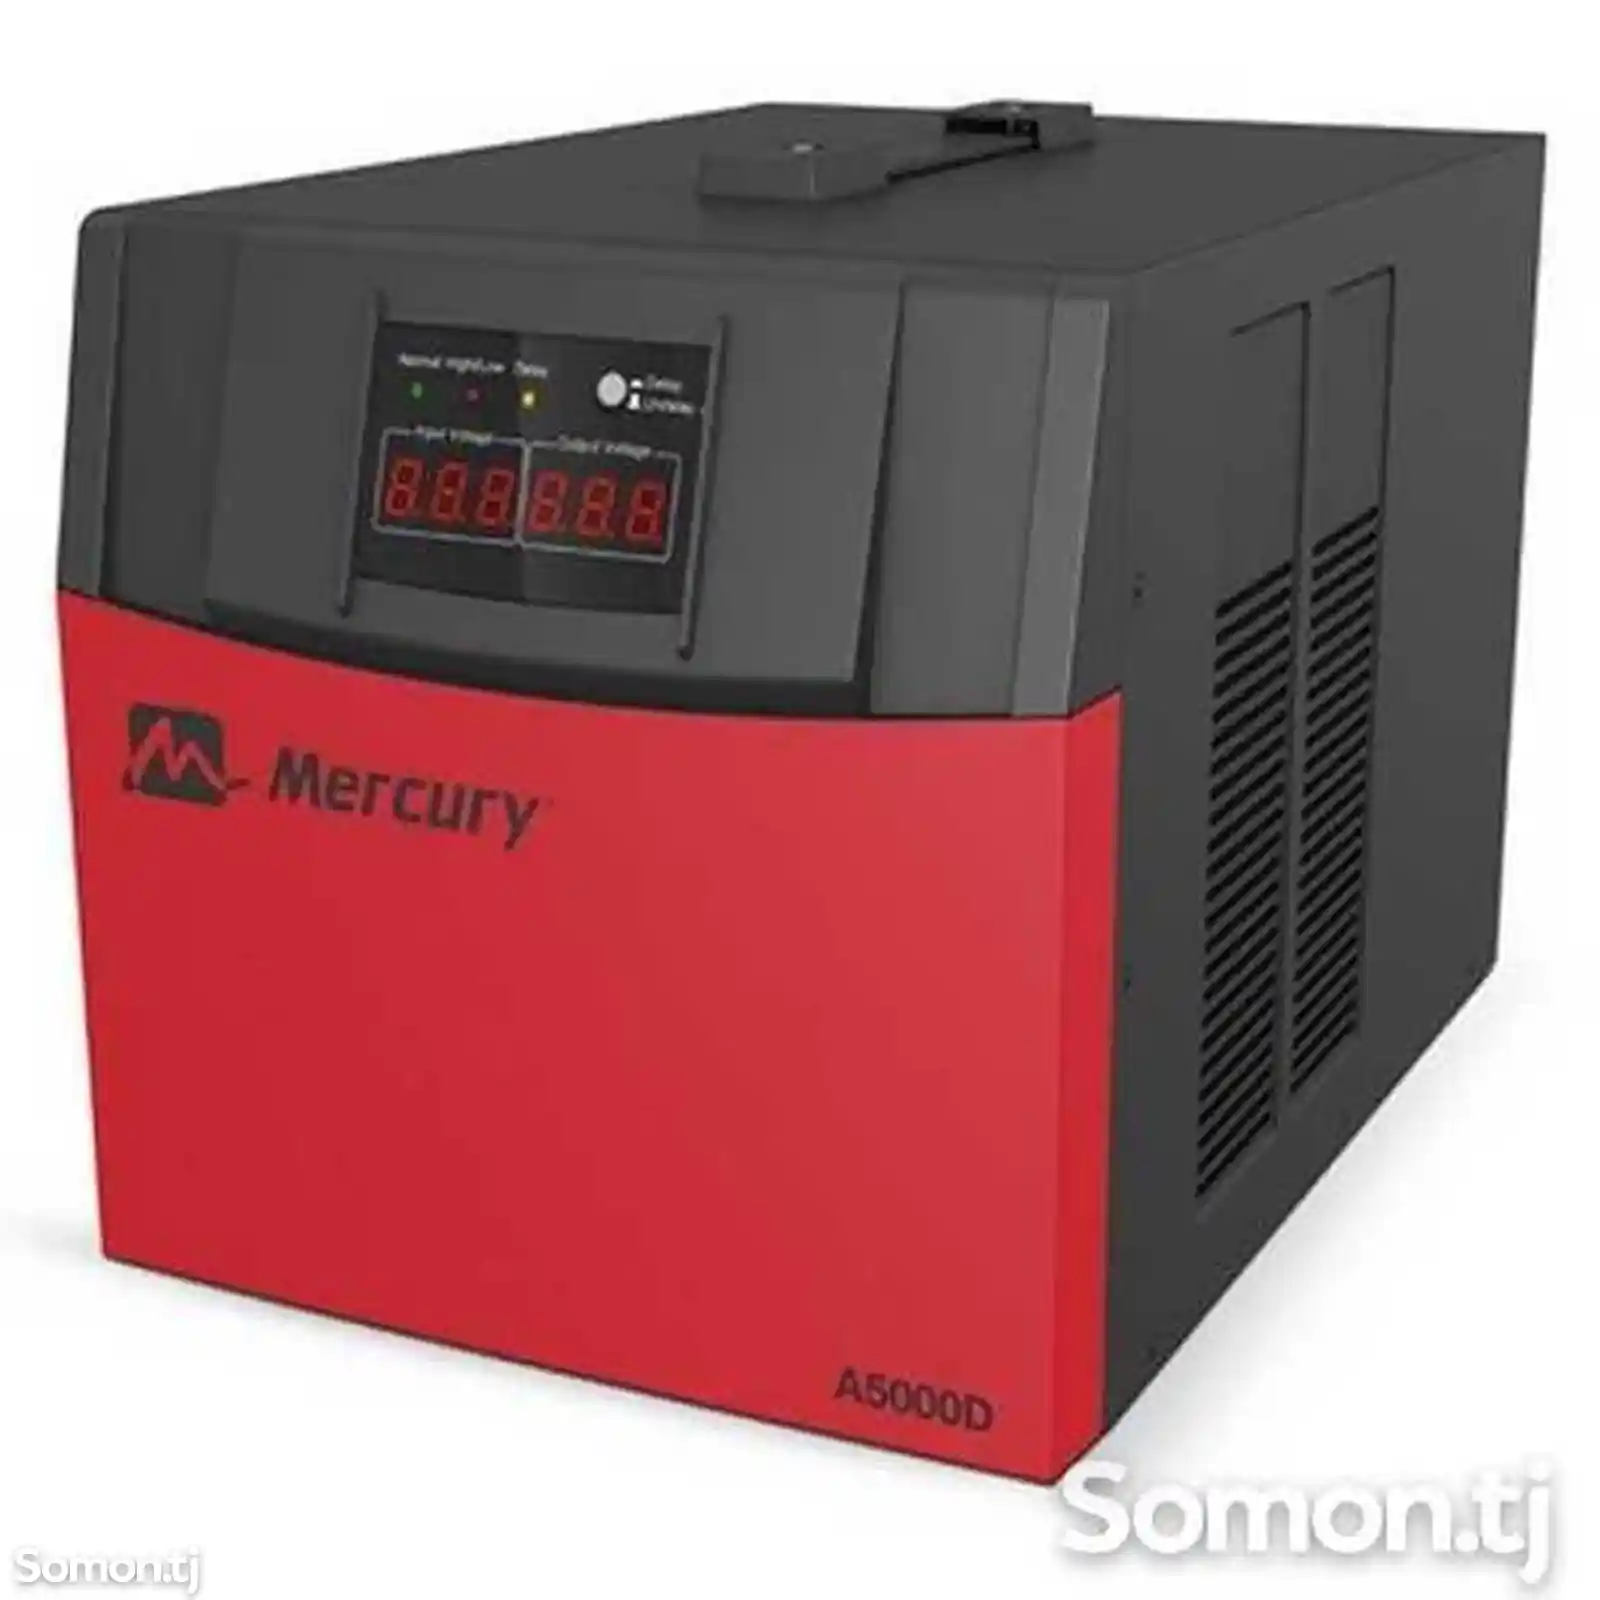 Стабилизатор Mercury A5000d-3